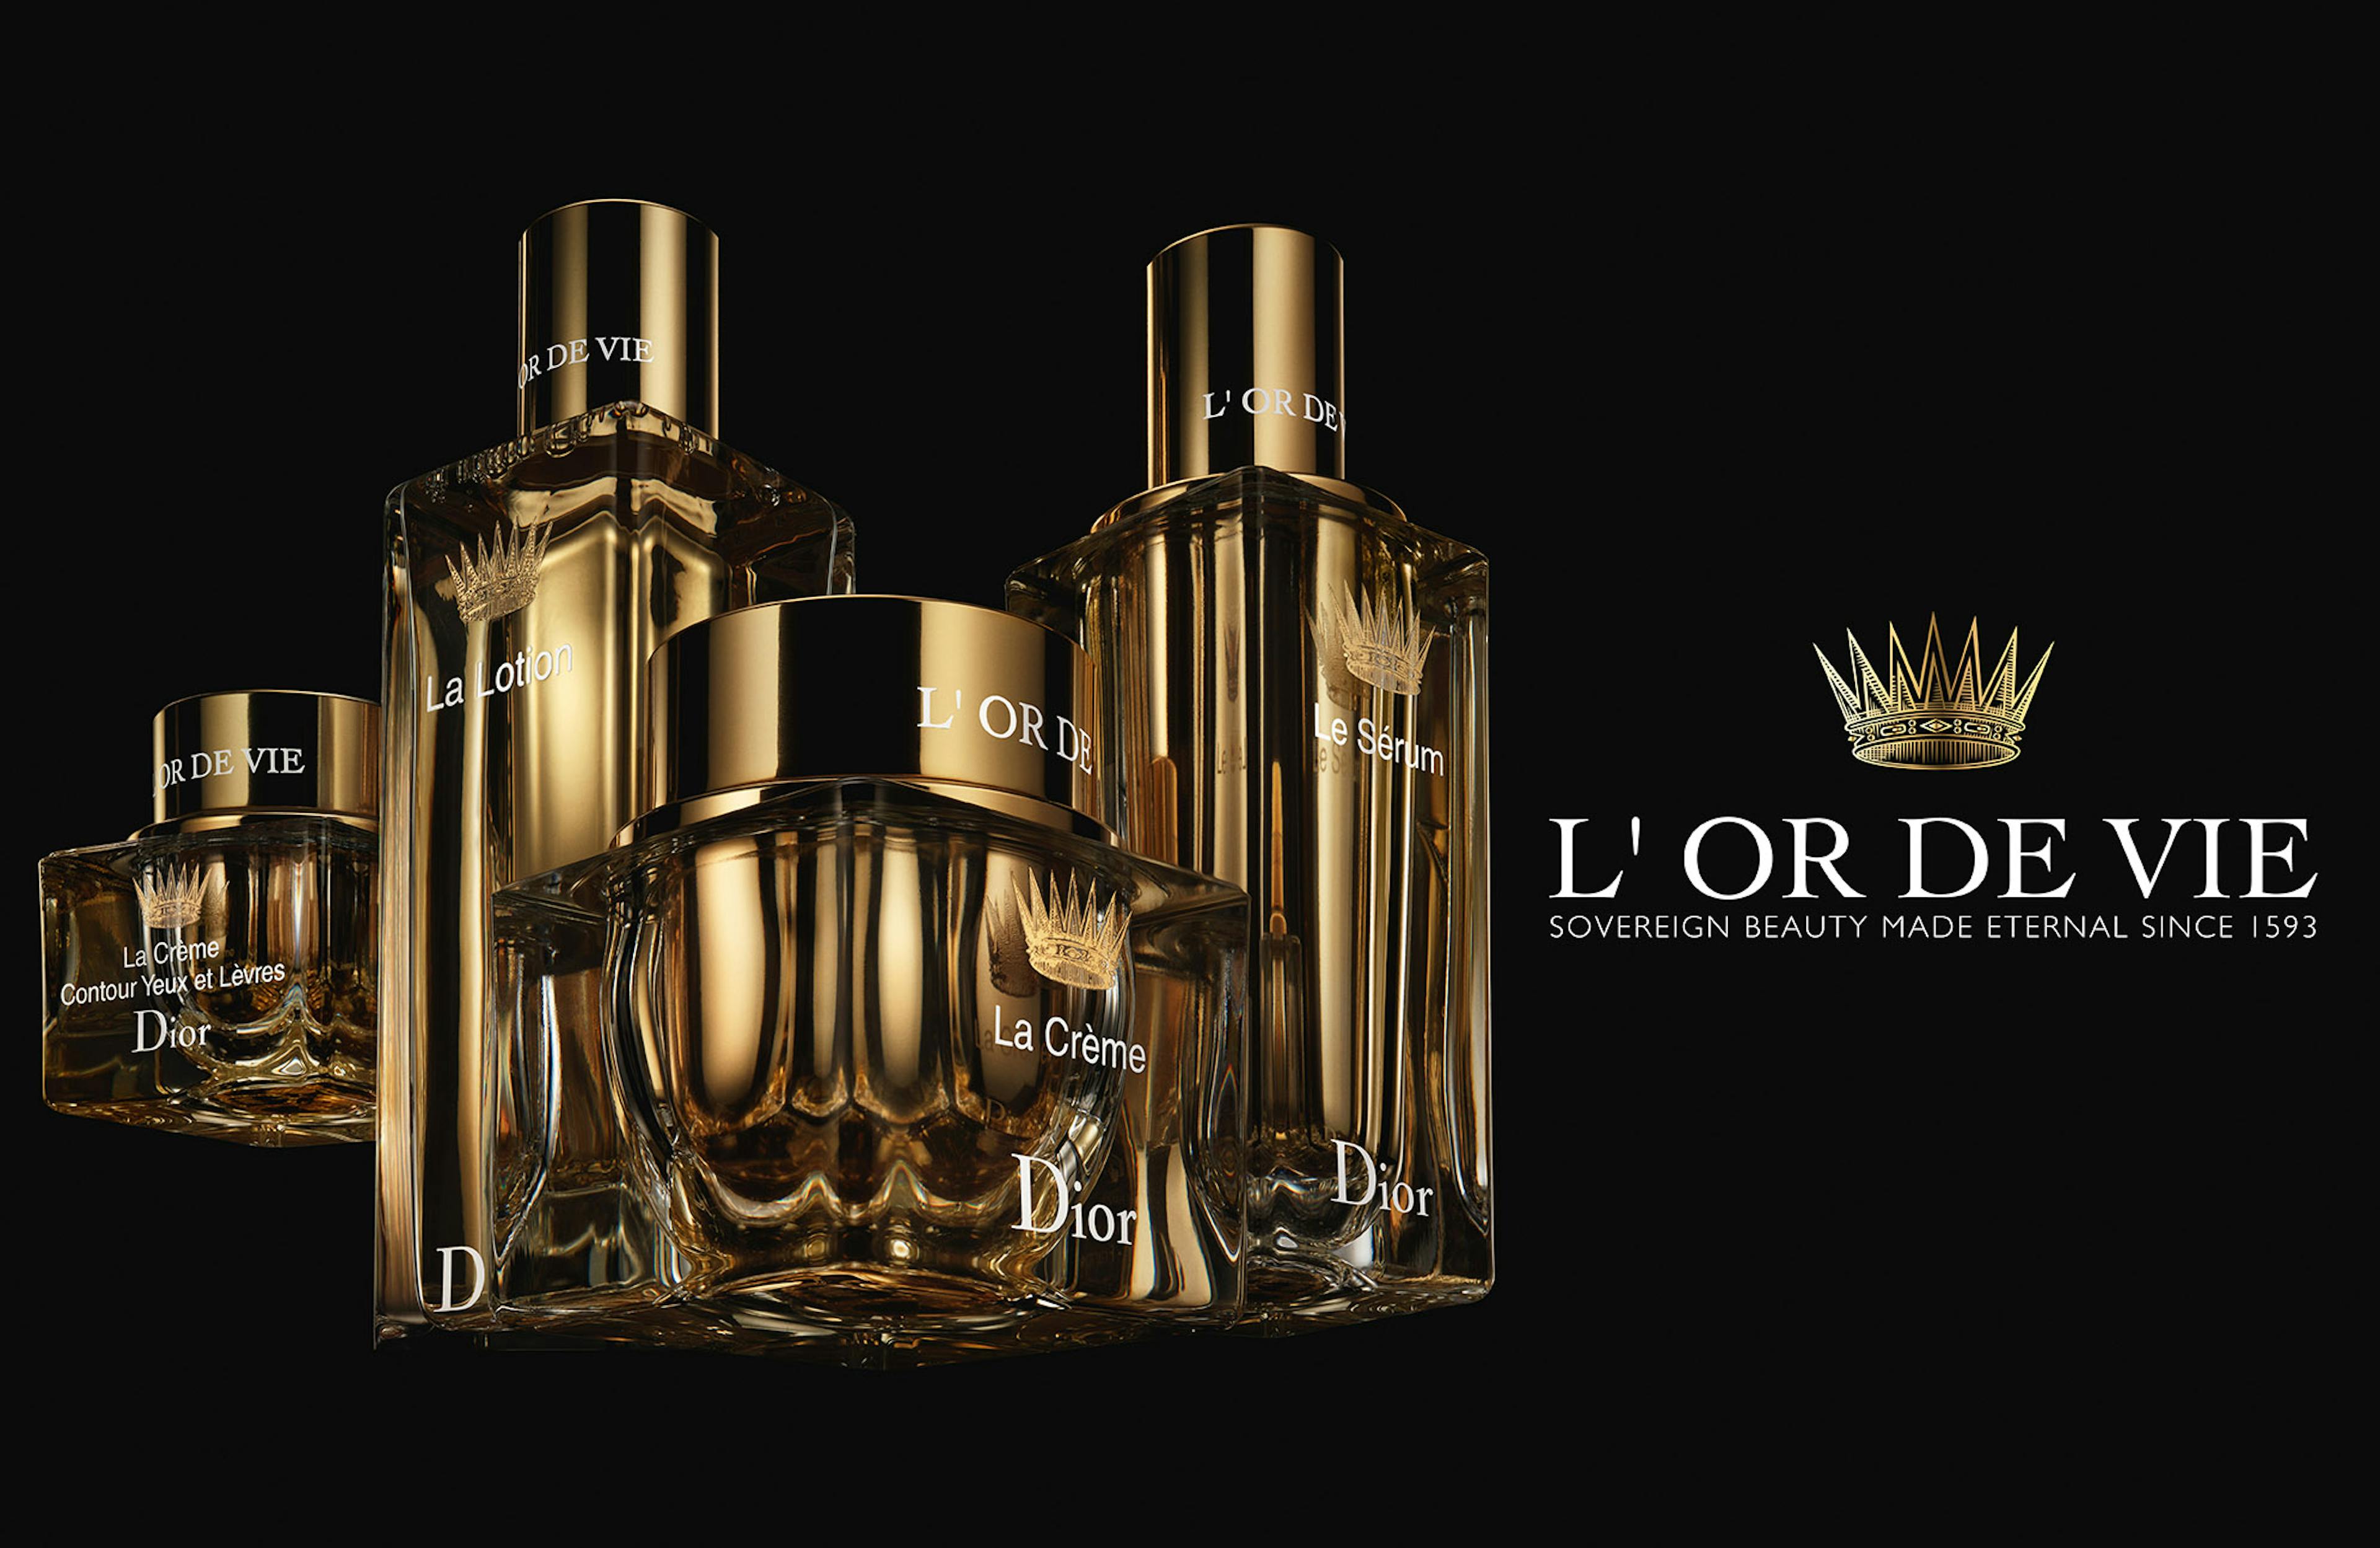 L'OR DE VIE © Parfums Christian Dior